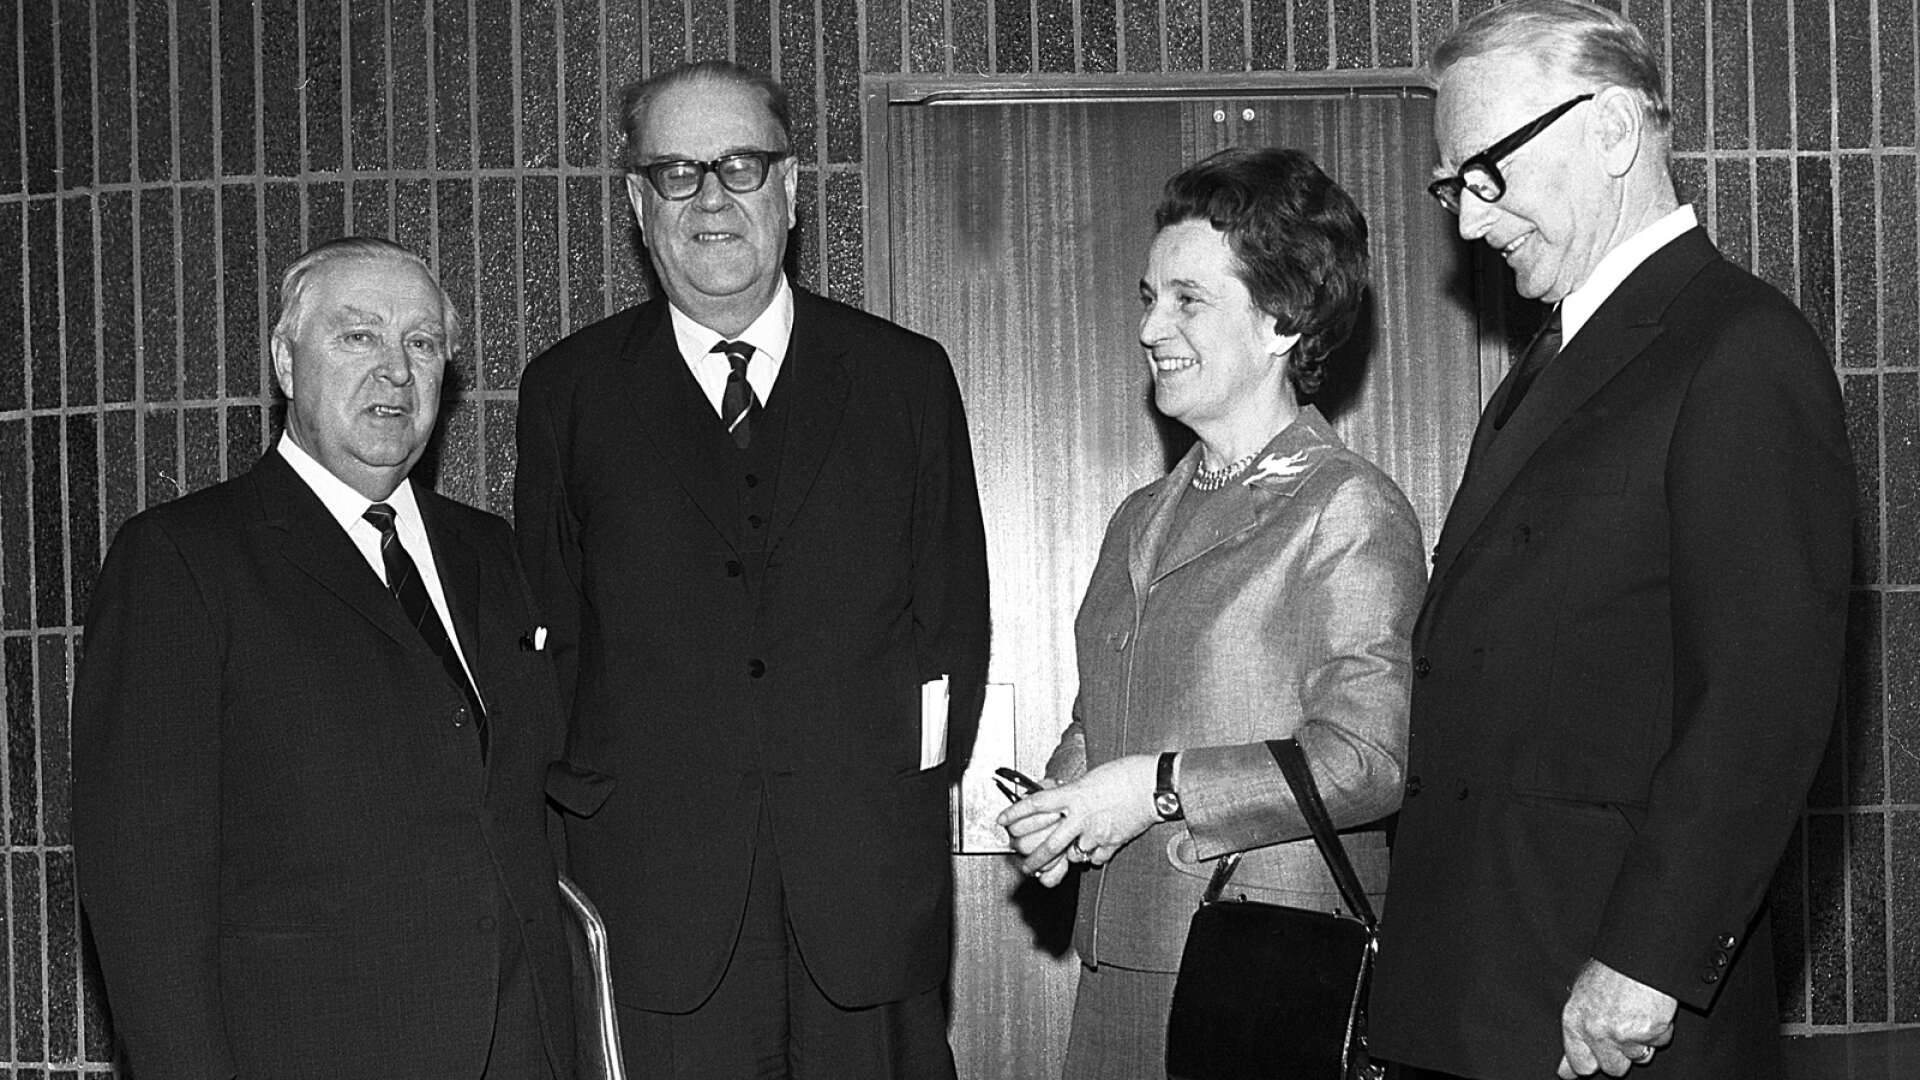 Statsminister Tage Erlander var i slutet av 1960-talet på besök i Säffle. På bilden ses han tillsammans med kommunalrådet Harry Jansson och Elsa och Torsten Källe. 